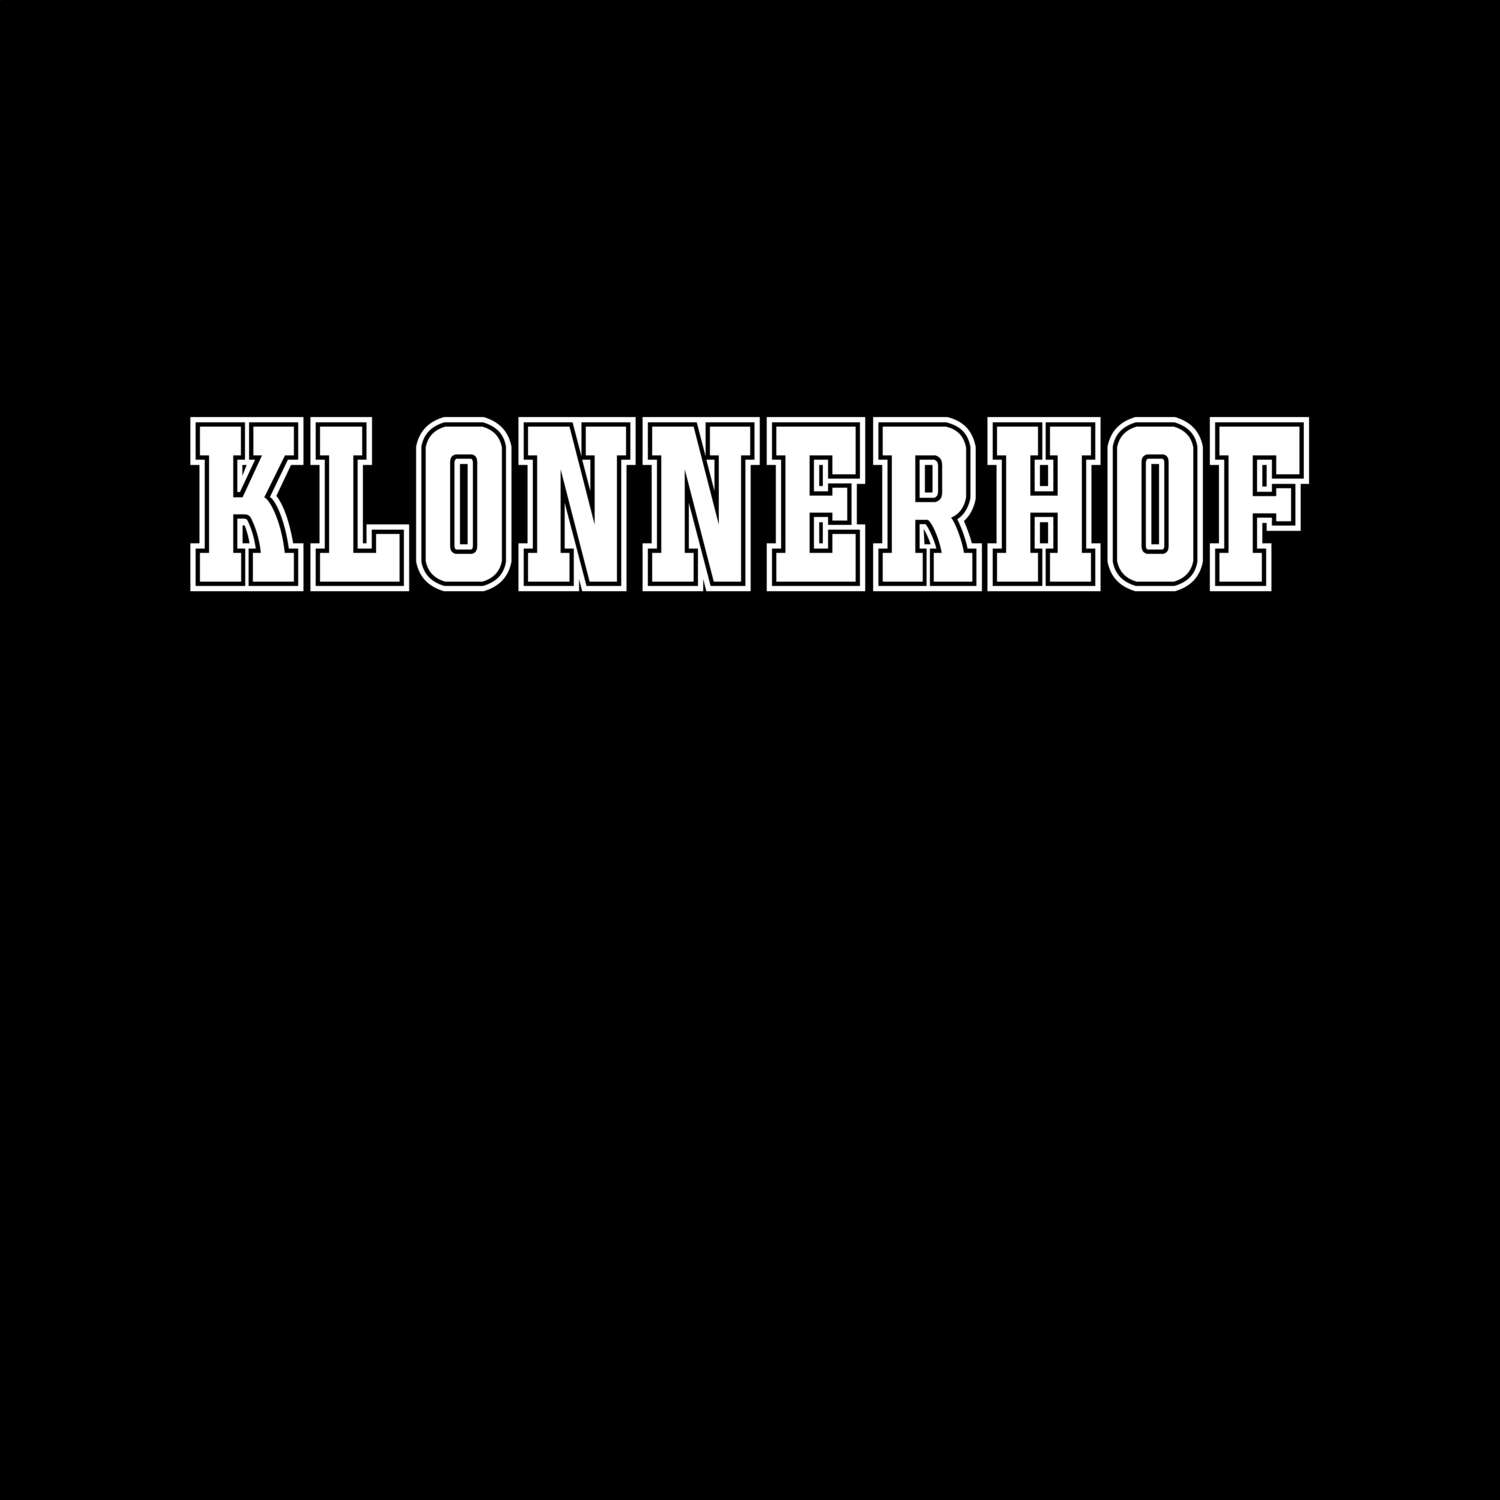 Klonnerhof T-Shirt »Classic«